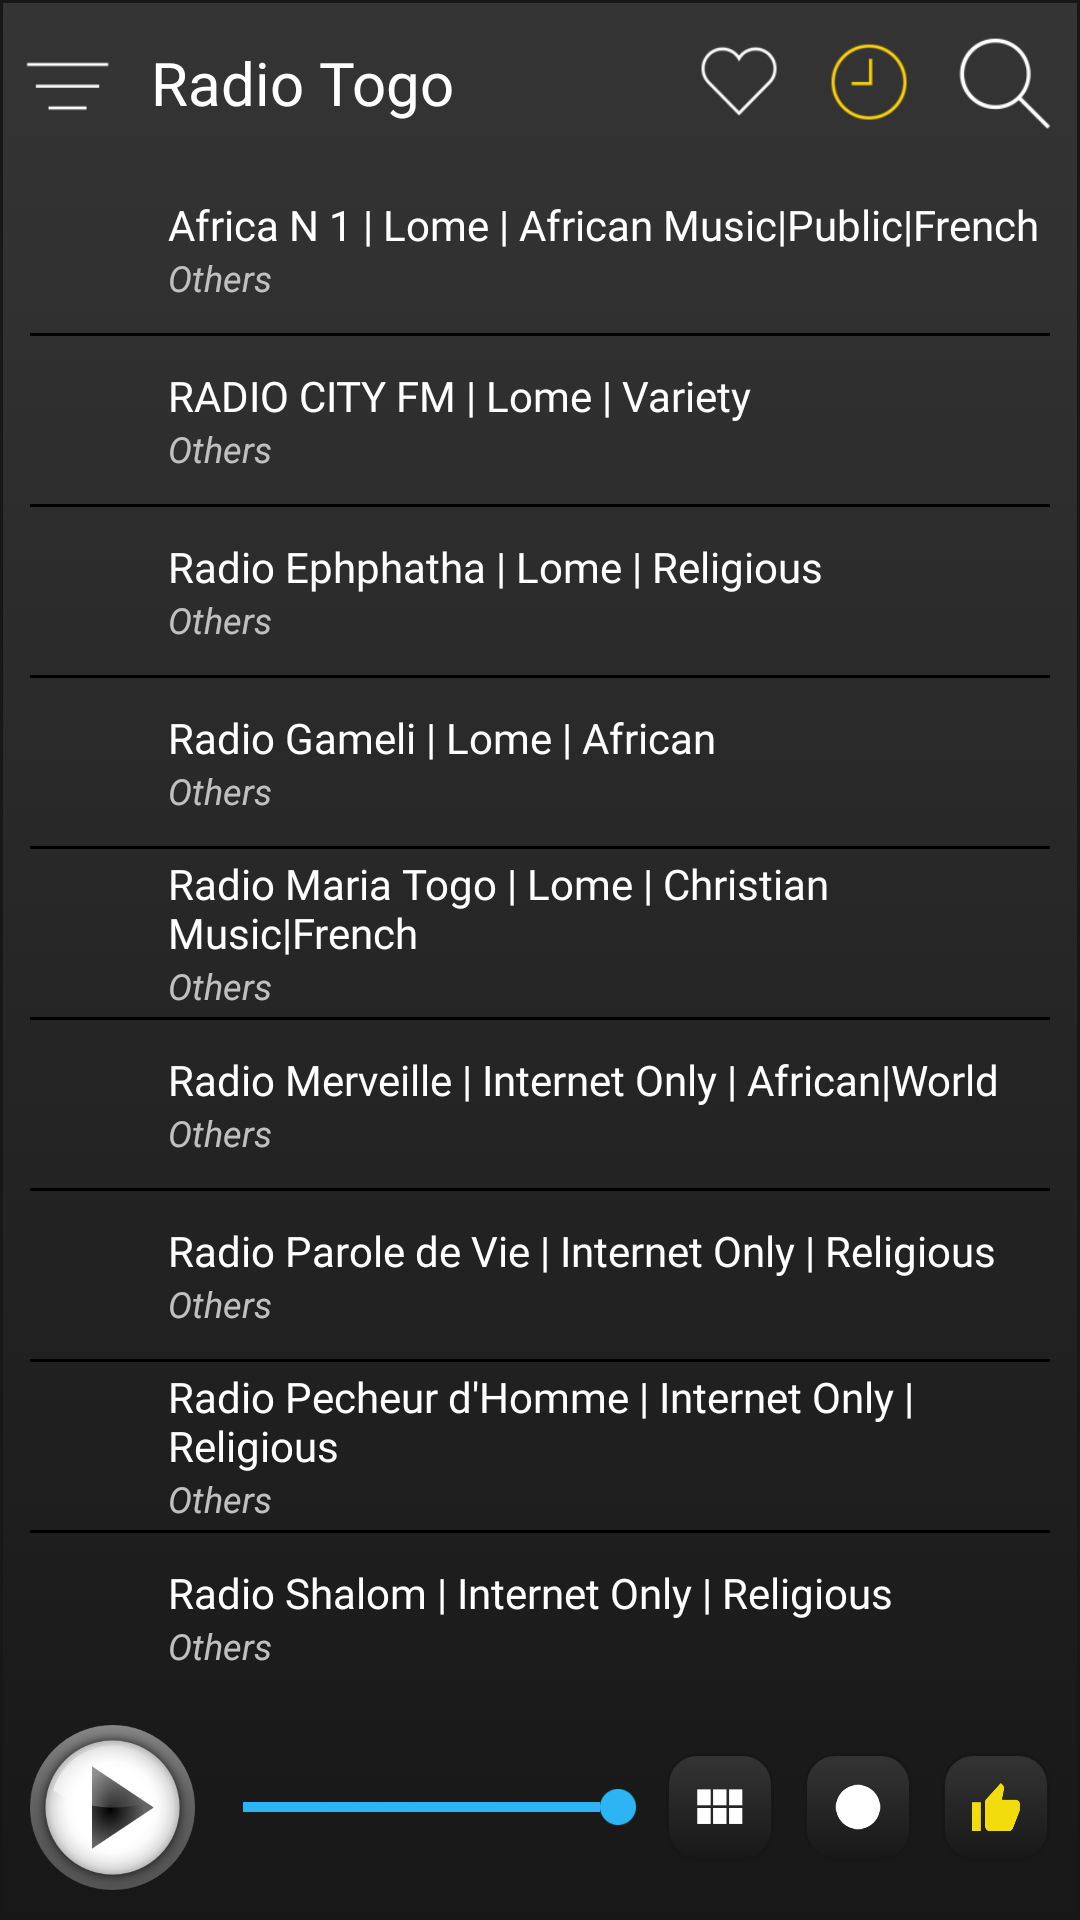 Togo Radio FM AM Music APK 2.4.0 for Android – Download Togo Radio FM AM  Music XAPK (APK Bundle) Latest Version from APKFab.com